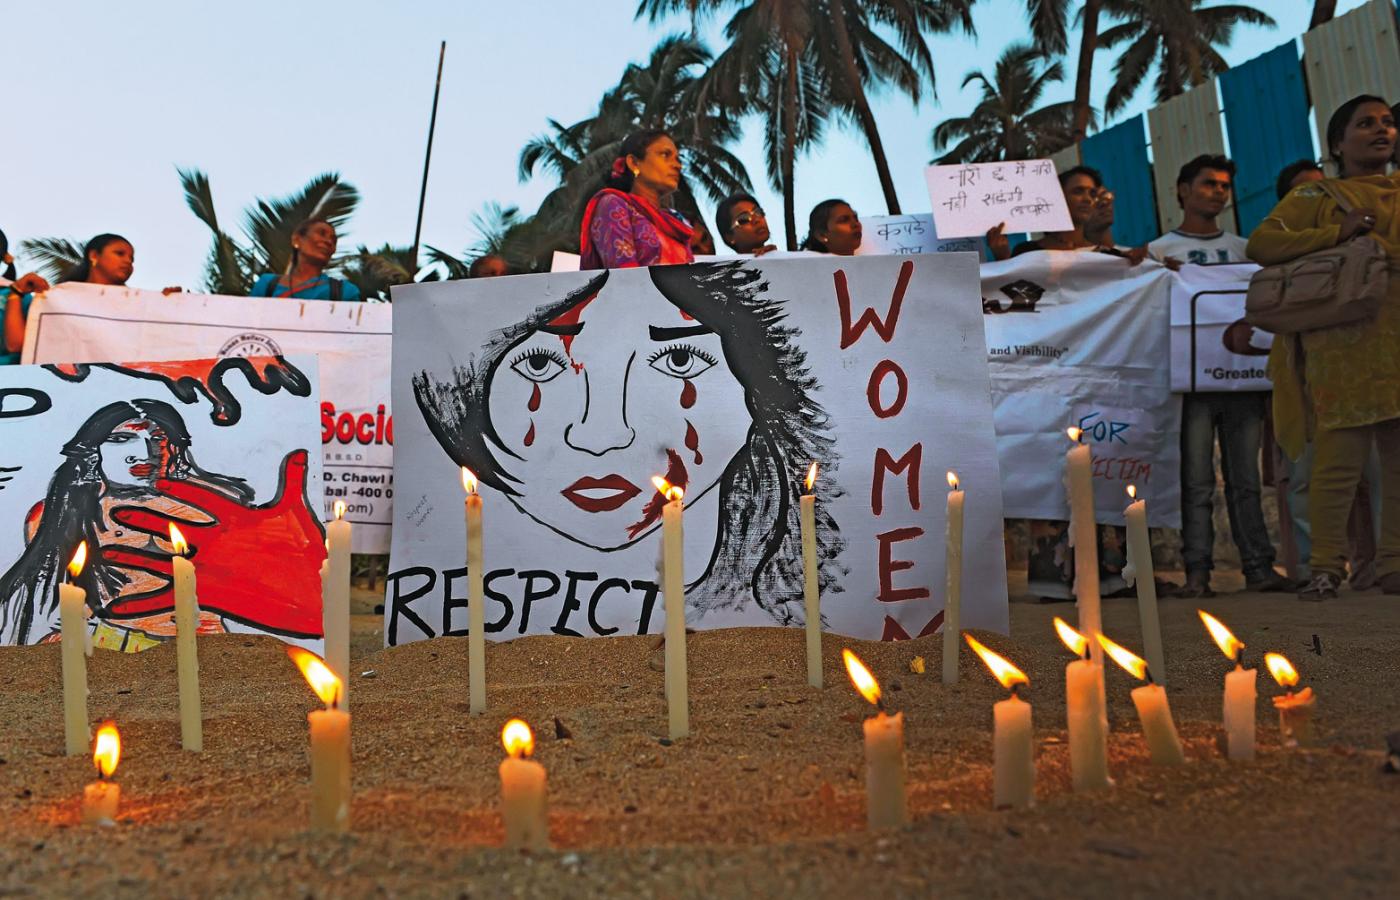 Znikoma karalność gwałcicieli wynika z zakorzenionego w indyjskim społeczeństwie przekonania o niższej pozycji kobiet.